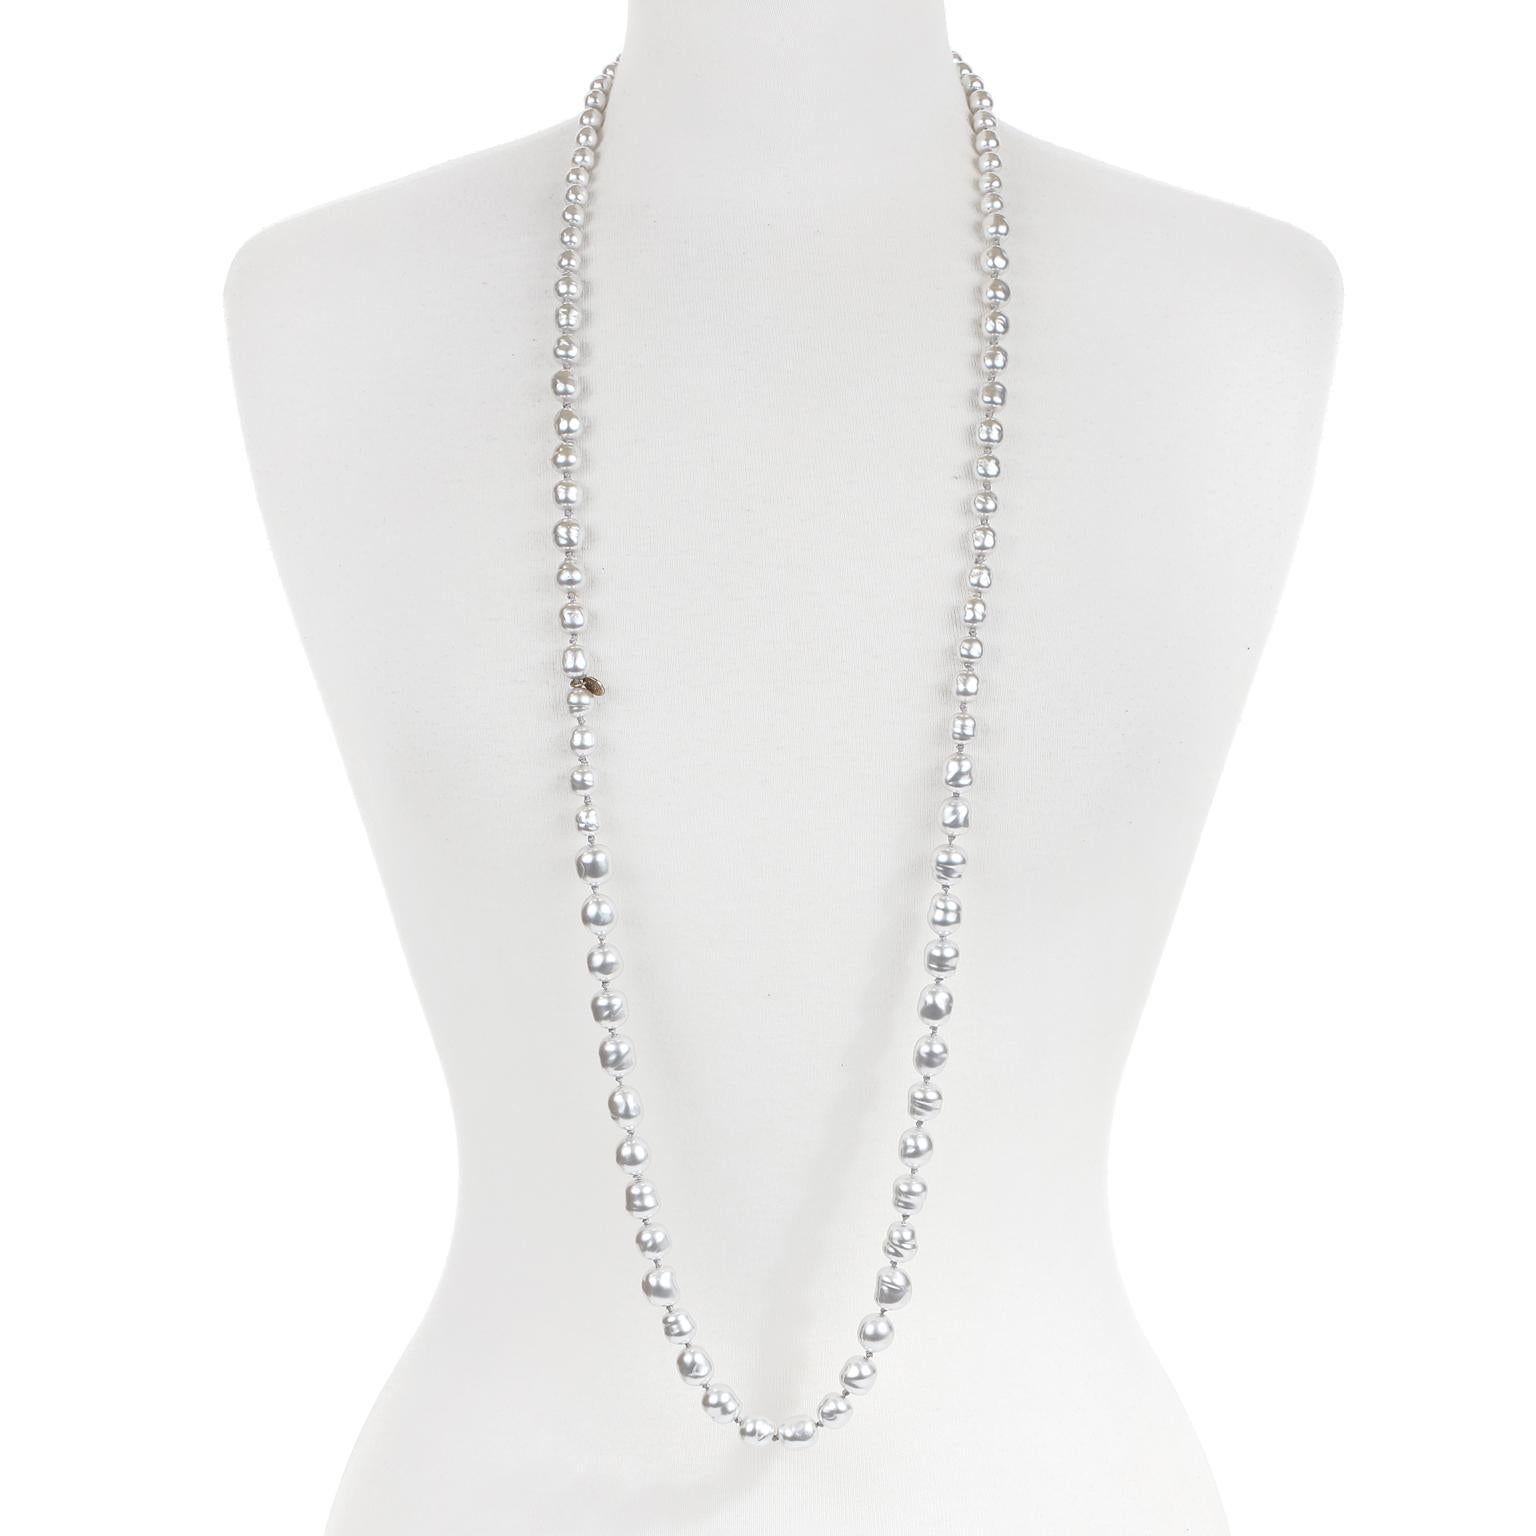 Diese authentische Chanel Silber Perle lange Halskette ist in ausgezeichnetem Vintage-Zustand aus der Kollektion 1981.  Silberne Kunstperlen sind in einer langen Silhouette zusammengeknotet.  Kann einzeln oder doppelt getragen werden.  Inklusive